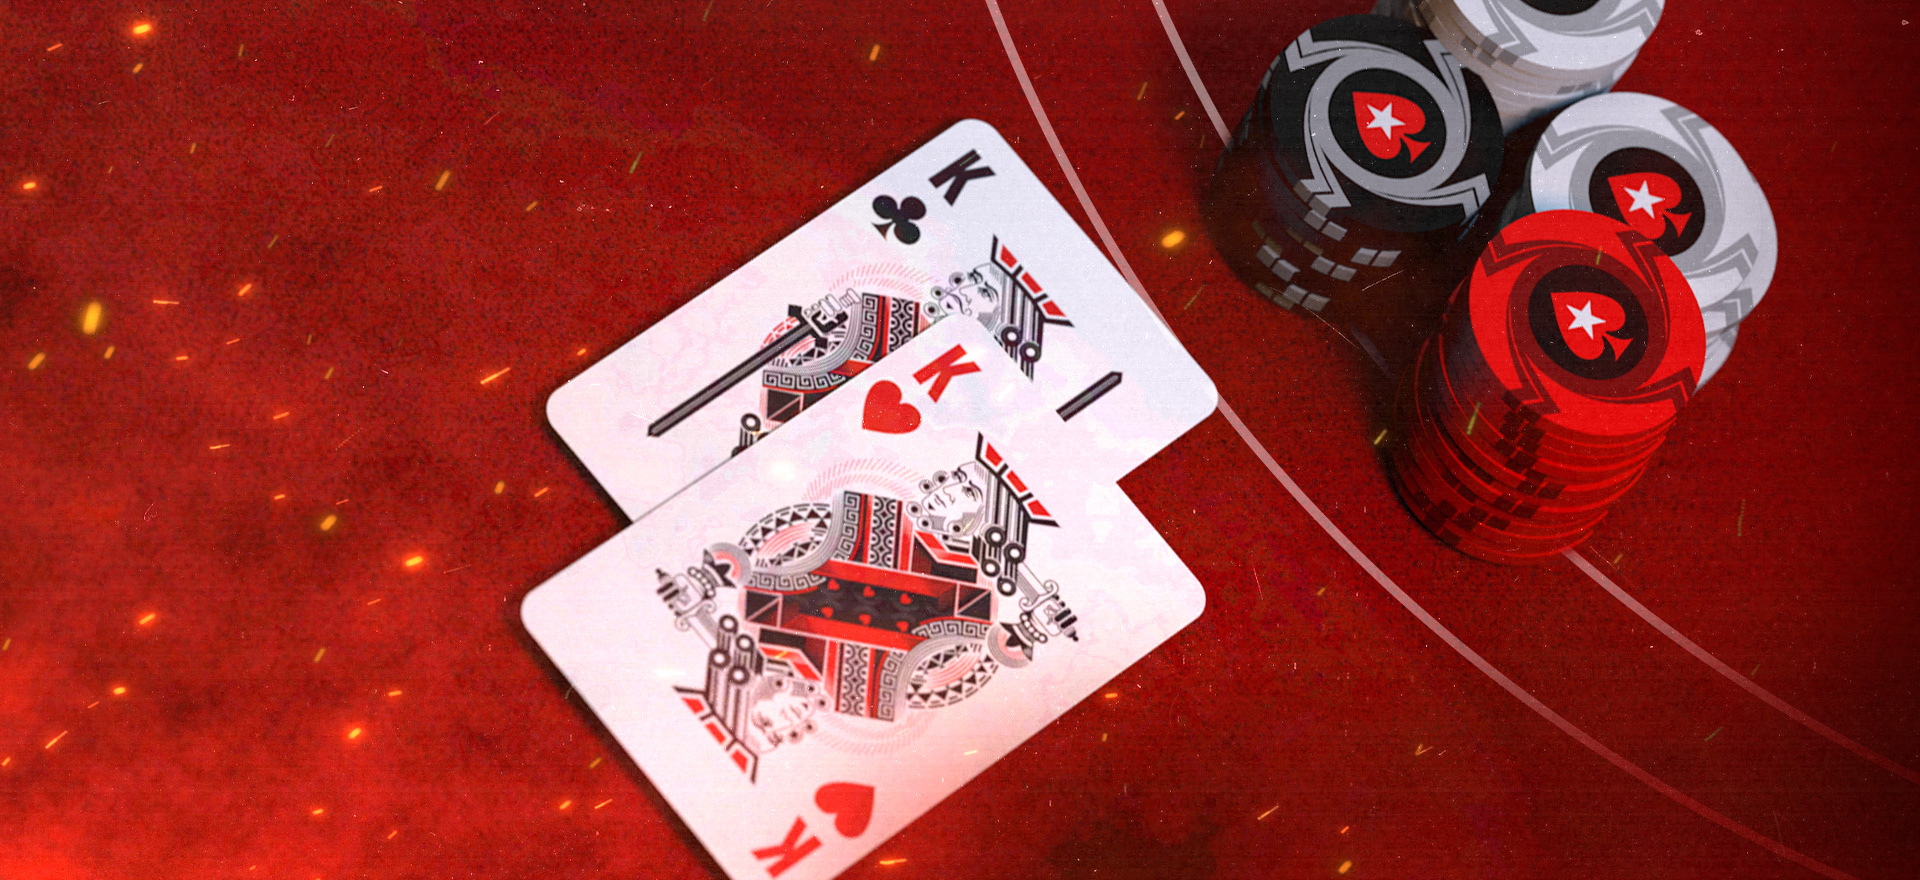 Cómo jugar blackjack en casino: trucos y consejos clave